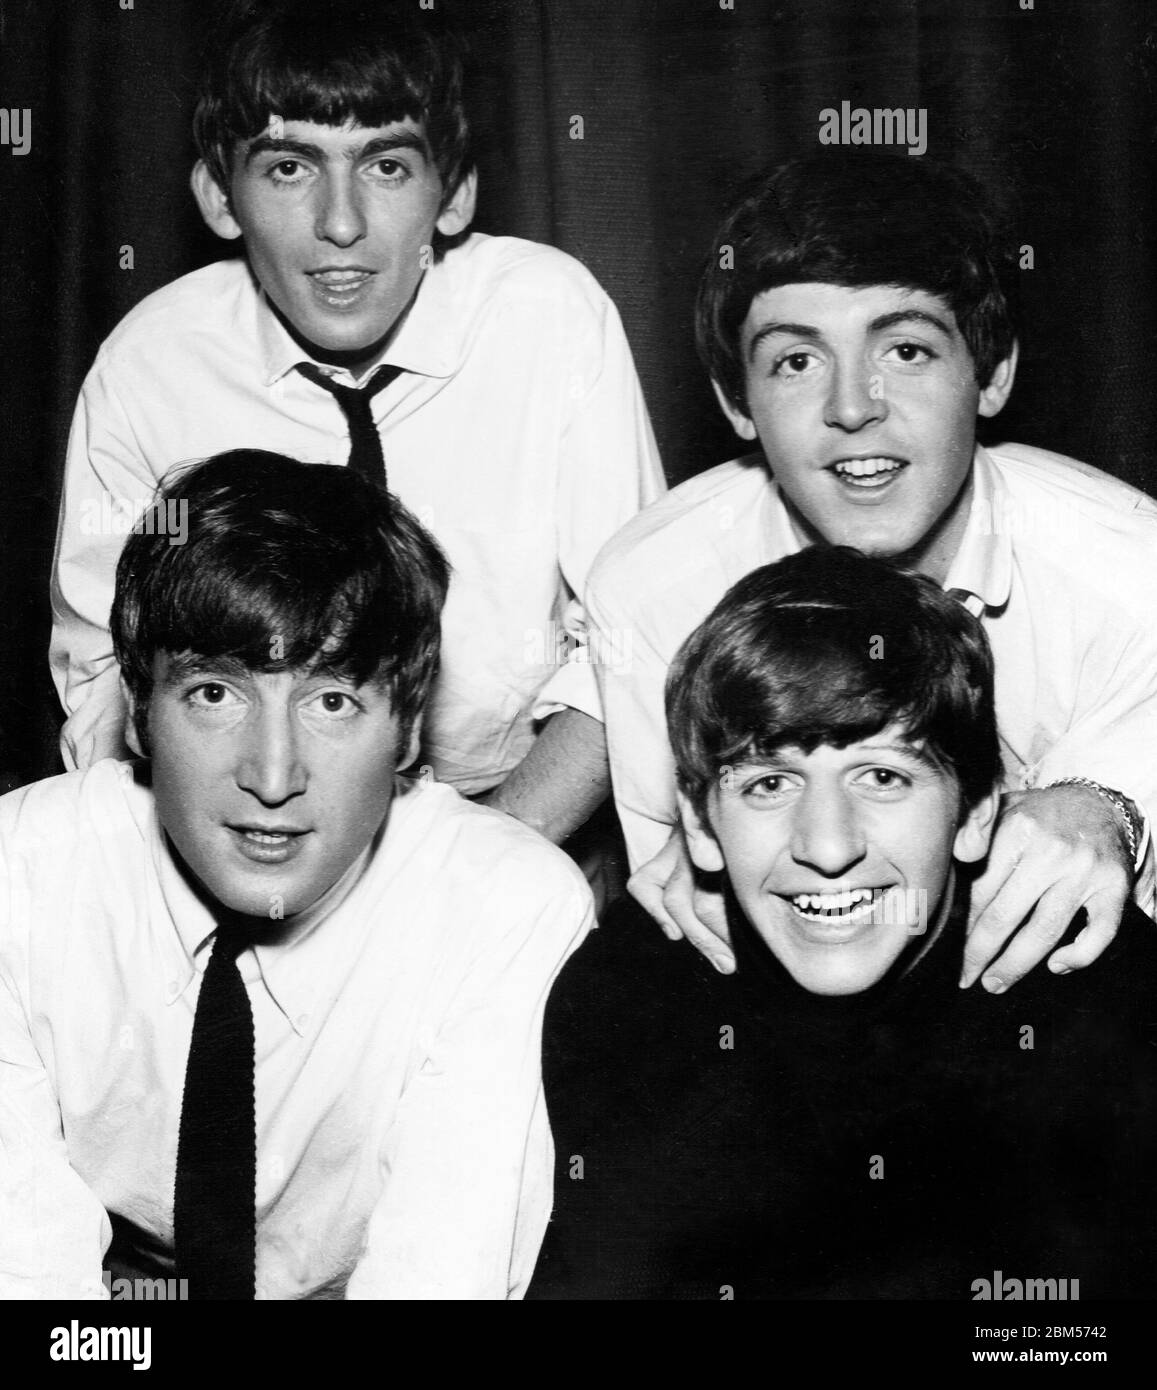 The Beatles - Studio Foto escaneada a partir de una fotografía original que  data de los años 60. Fotógrafo desconocido Fotografía de stock - Alamy